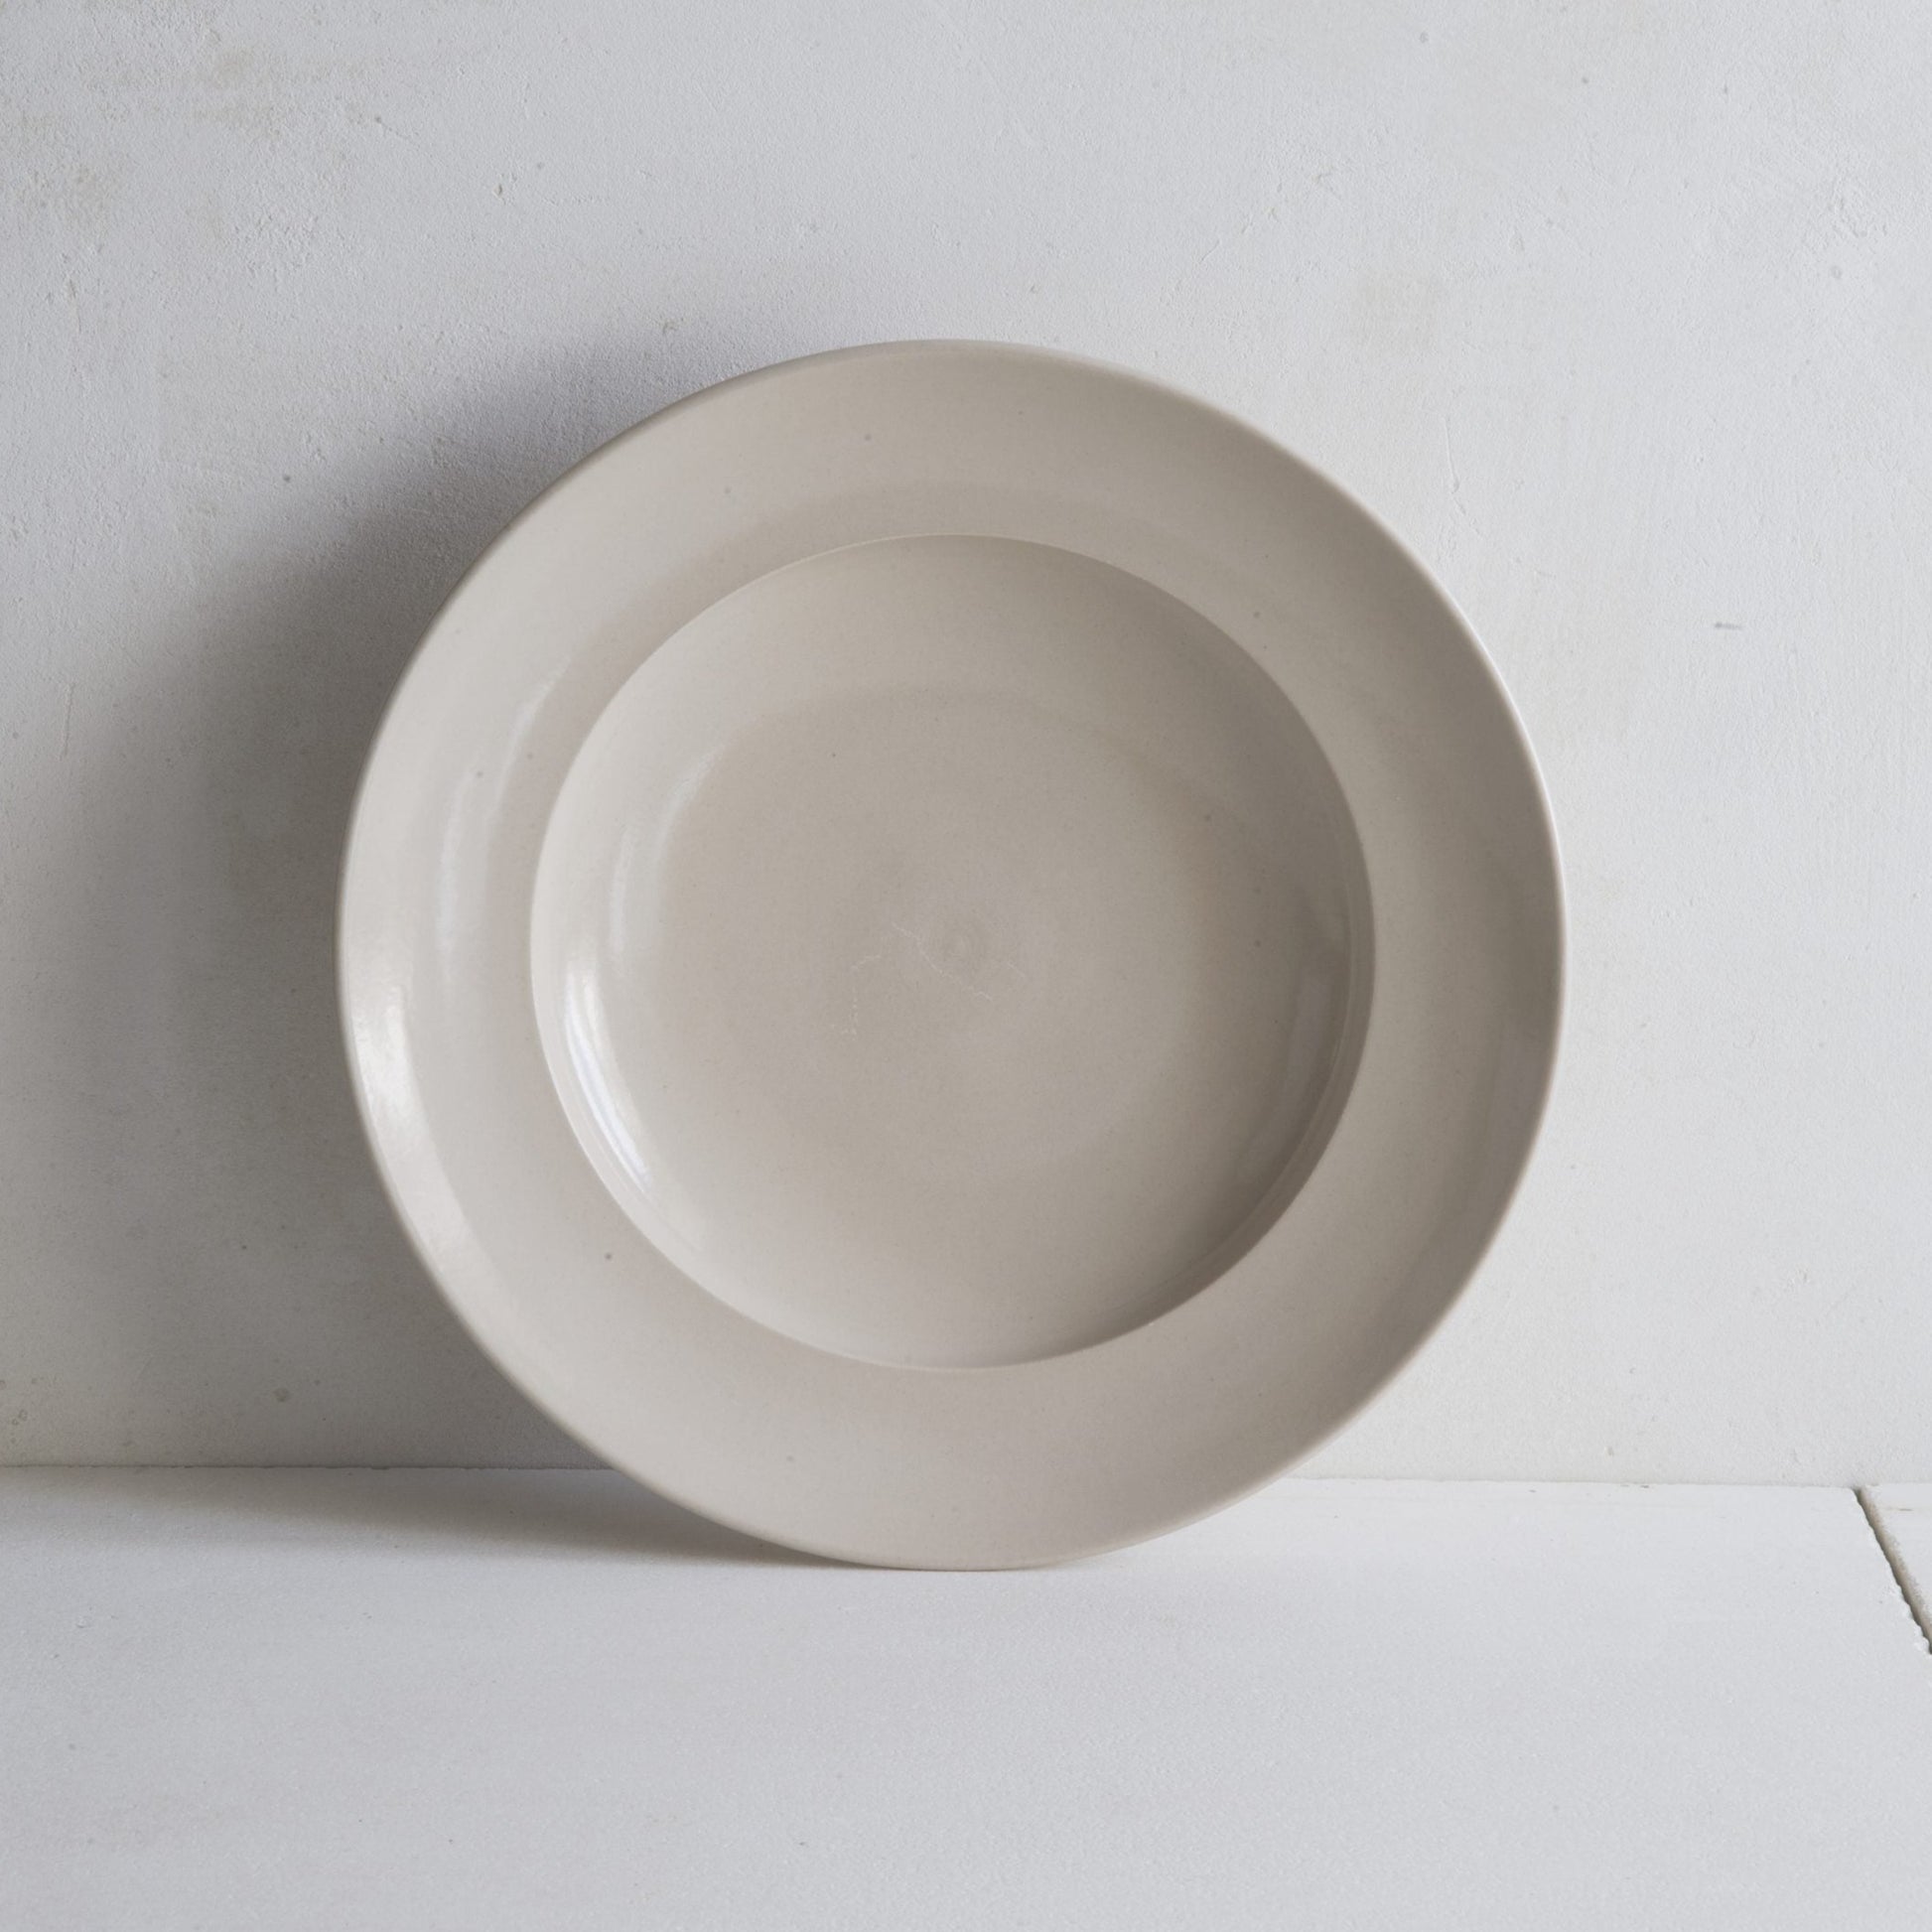 Classical Stoneware Shallow Bowl | Luxury Dinnerware | Handmade in UK